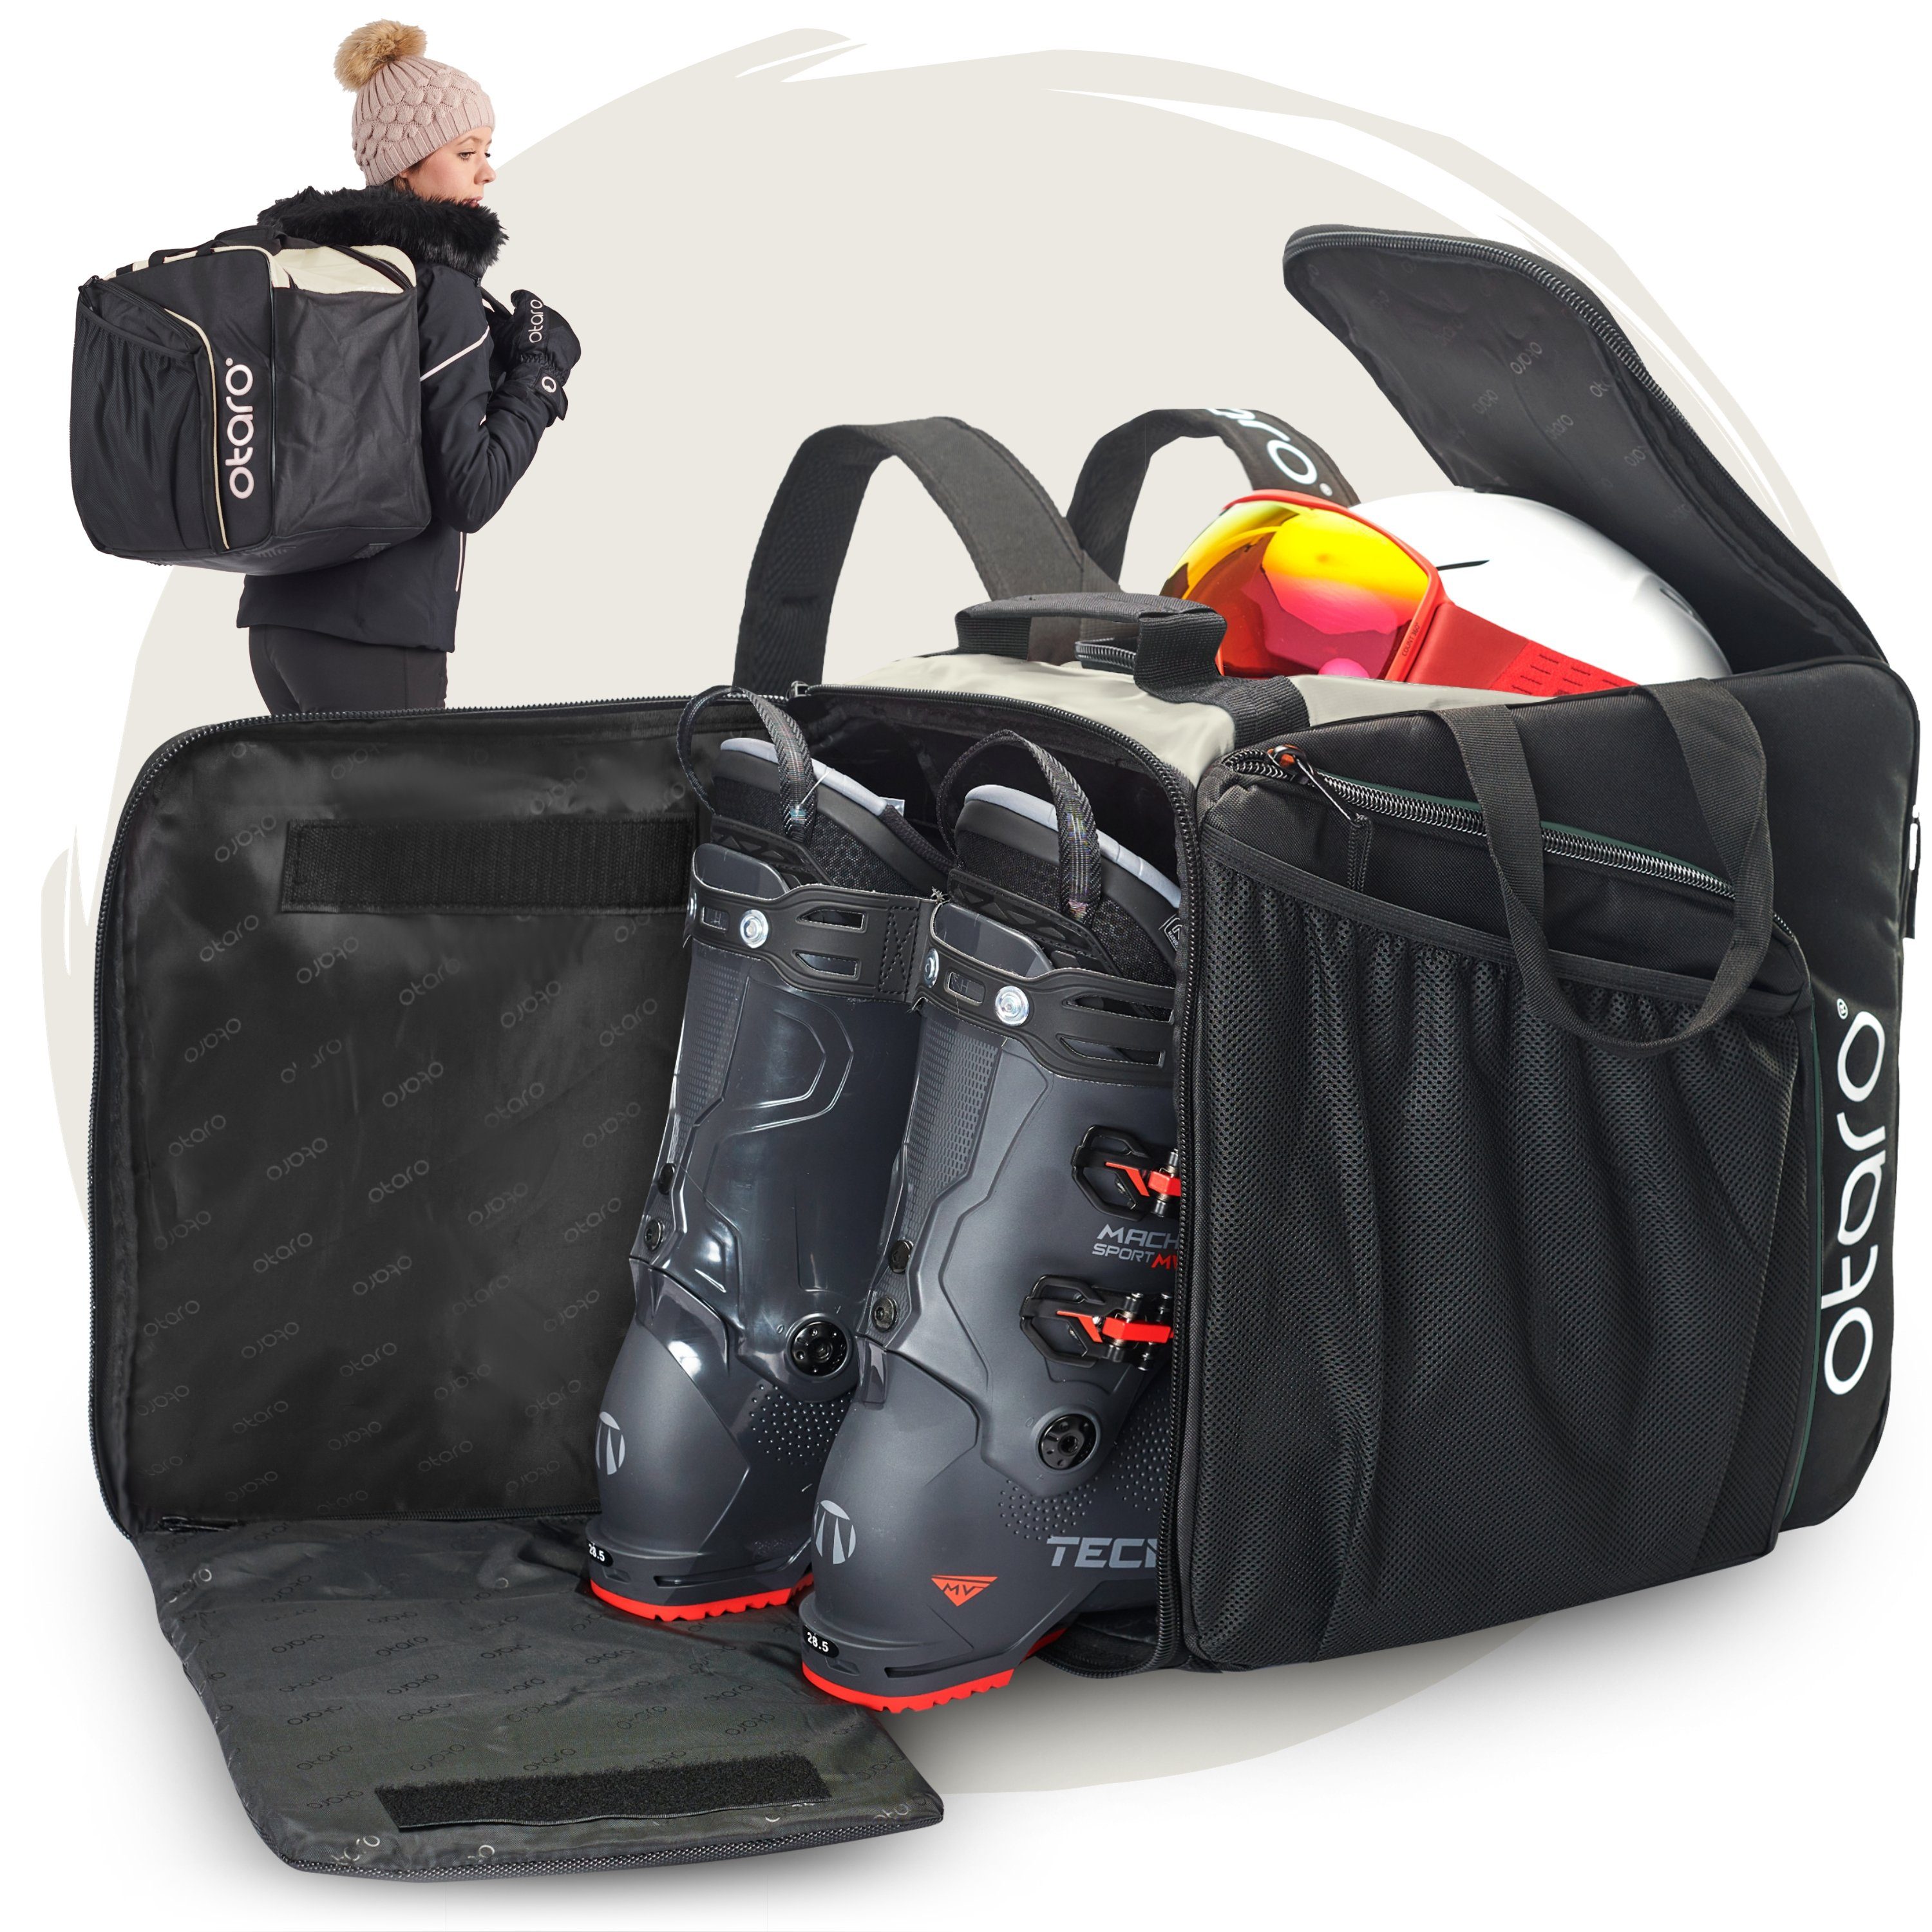 Otaro Sporttasche Skischuhtasche mit Helmfach & bequemen Rucksackträger, Pro 57L (Schutz für deine Ausrüstung, Perfekt durchdacht, ausklappbare Standfläche, für Skifahrer & Boarder) Schwarz Frostweiß